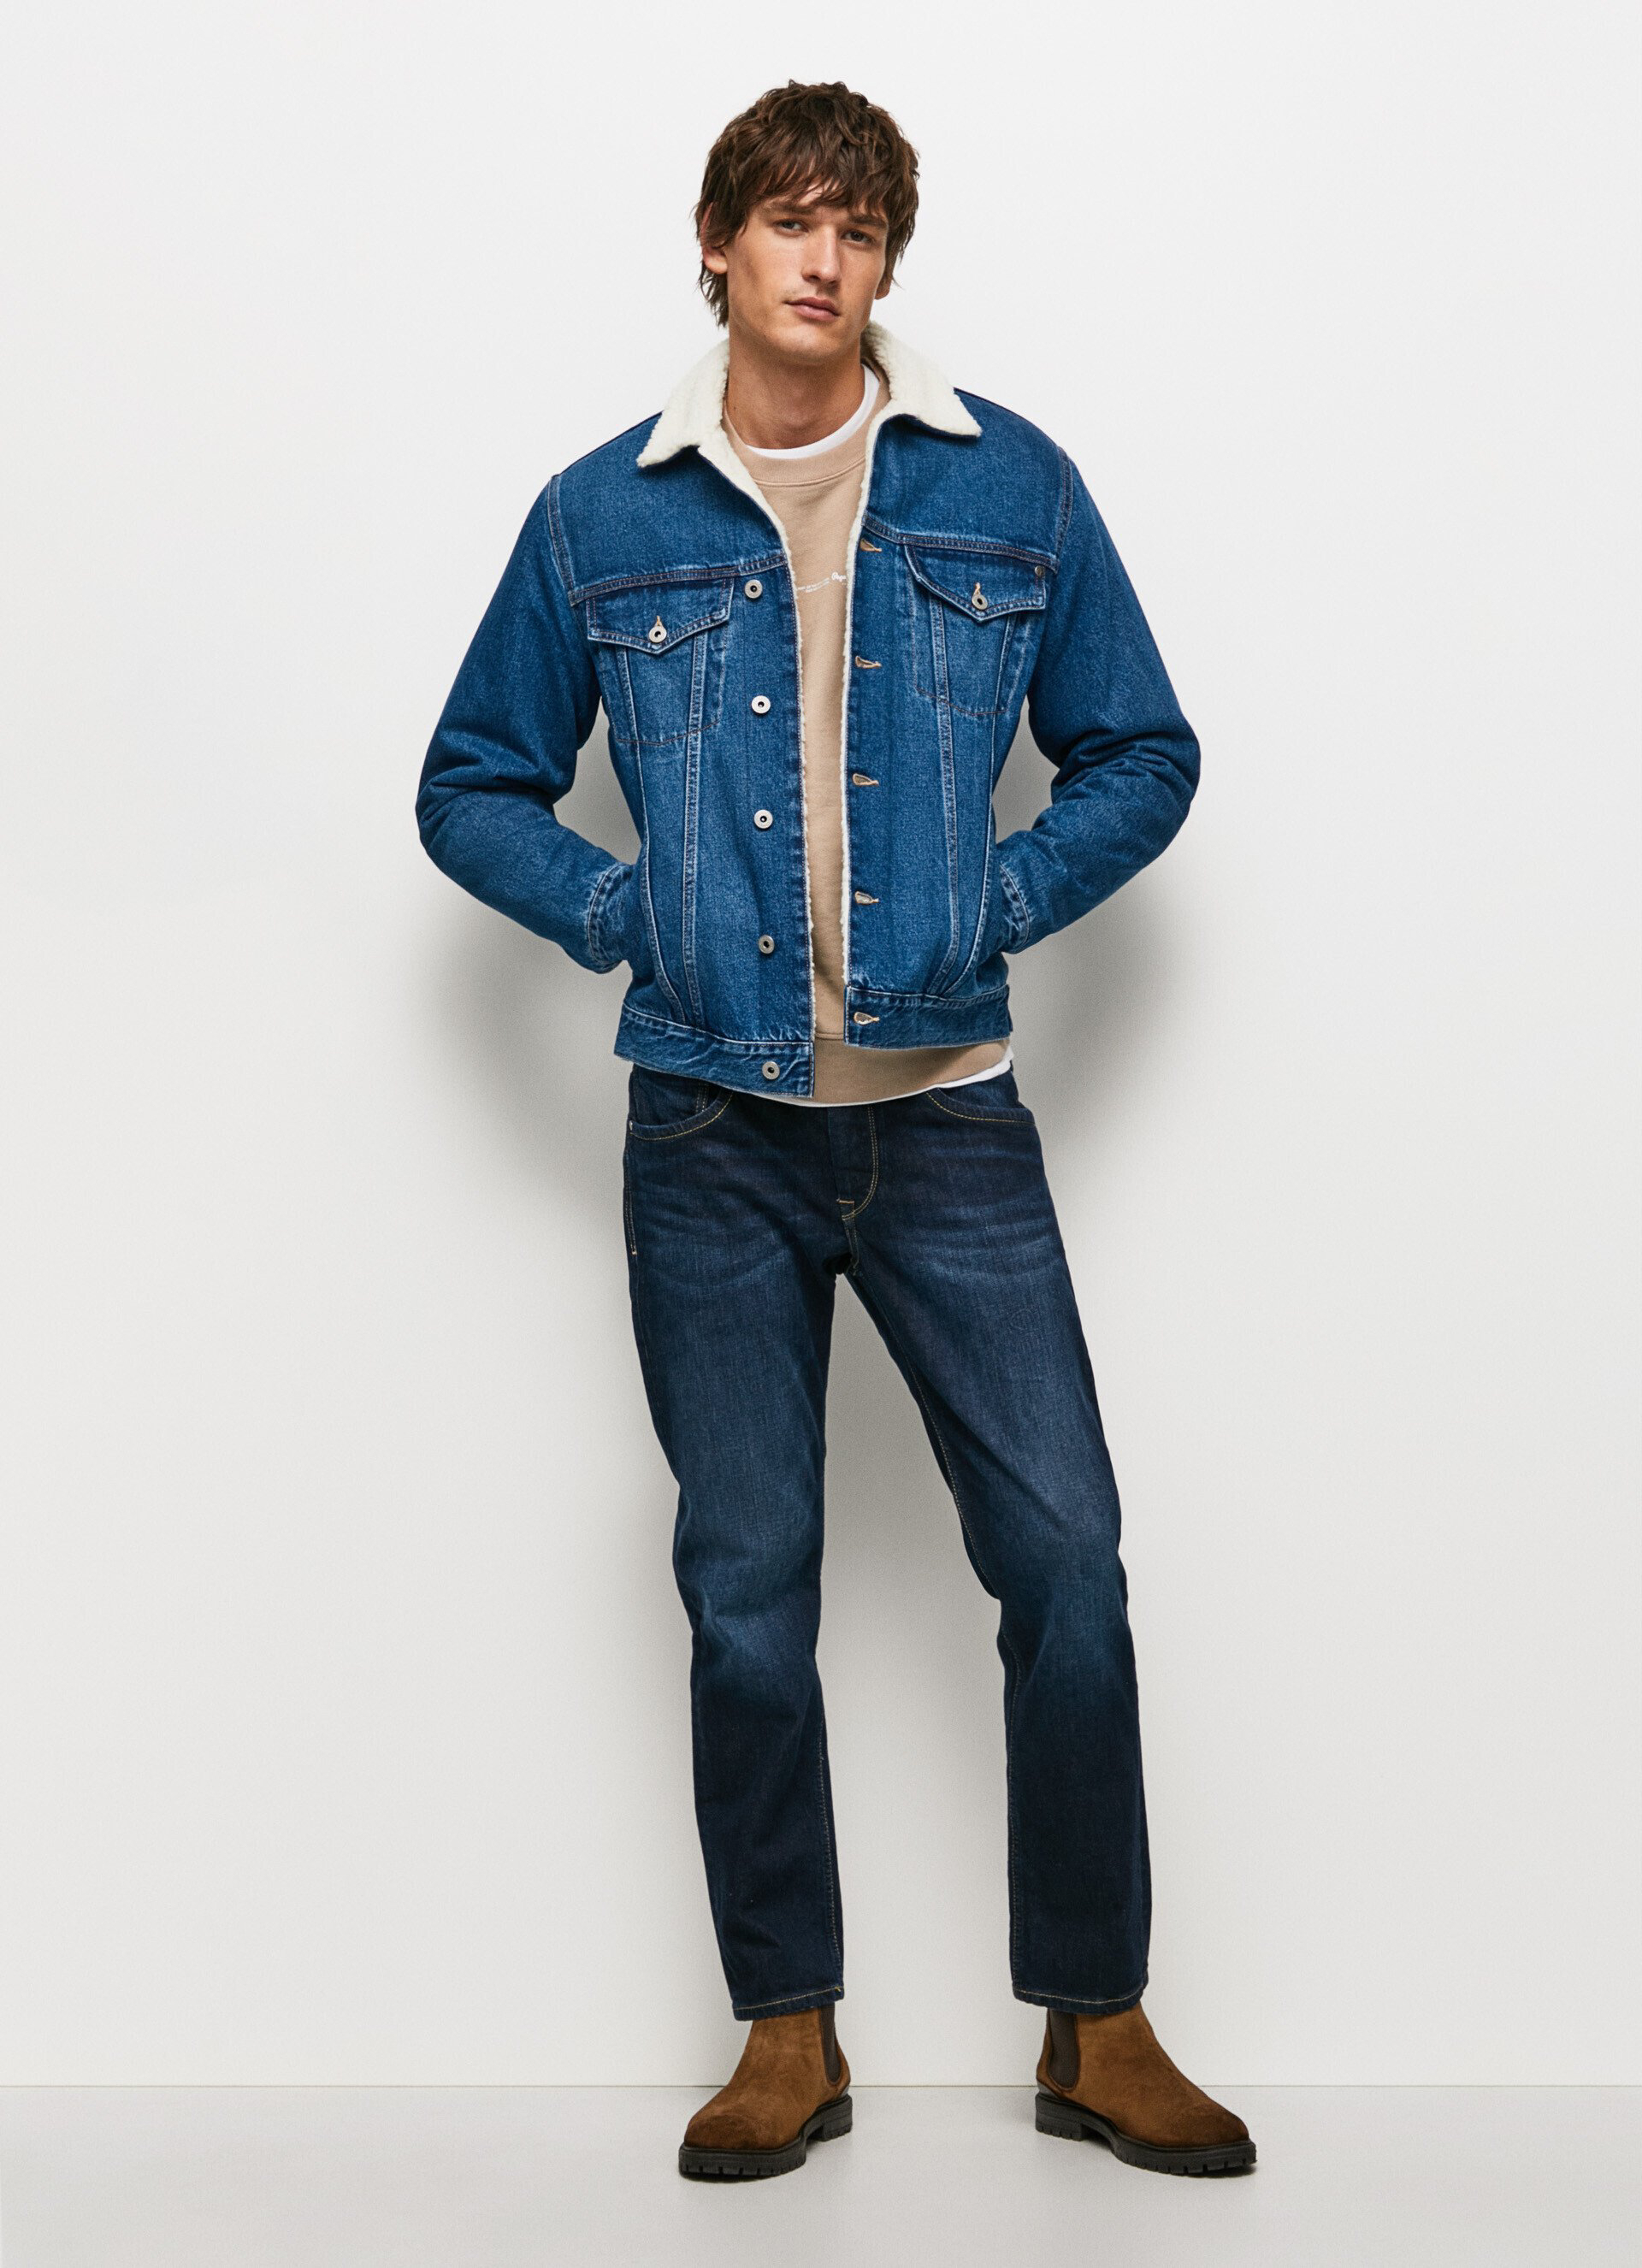 Pepe Jeans pánská džínová Pinner bunda - L (000)